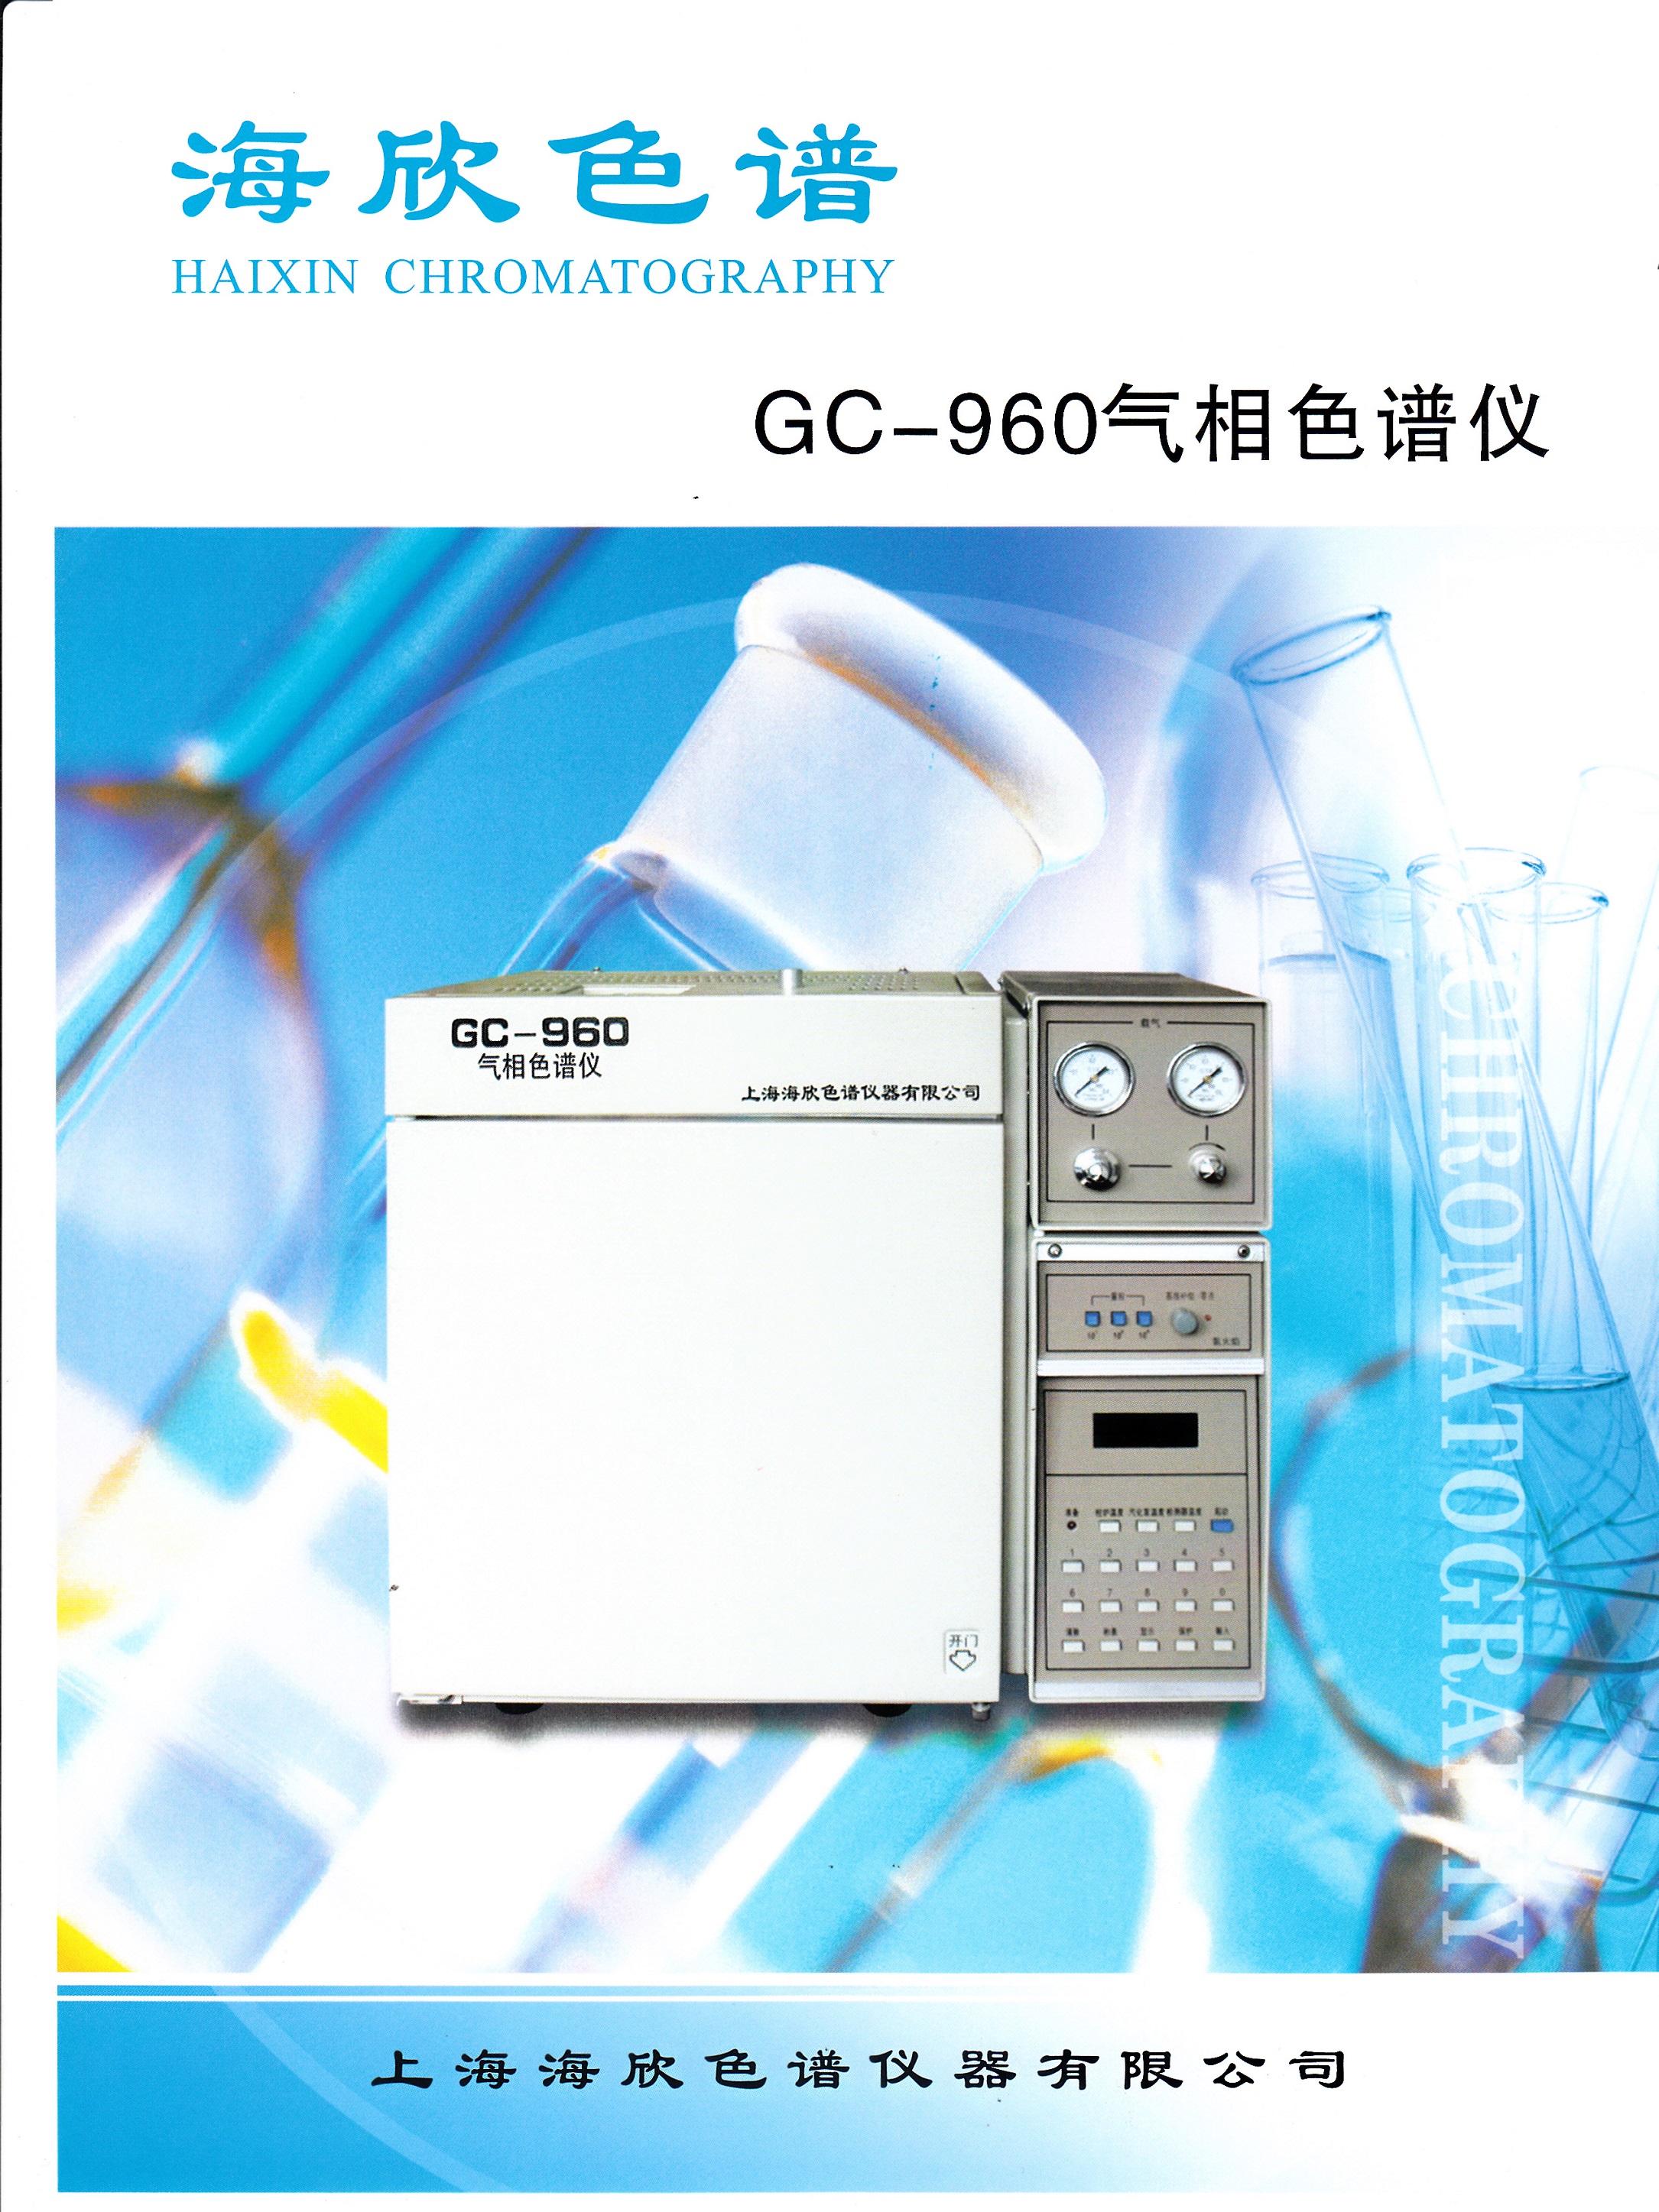 化学分析及化工仪器  GC950系列气相色谱仪  [请填写核心参数/卖点]